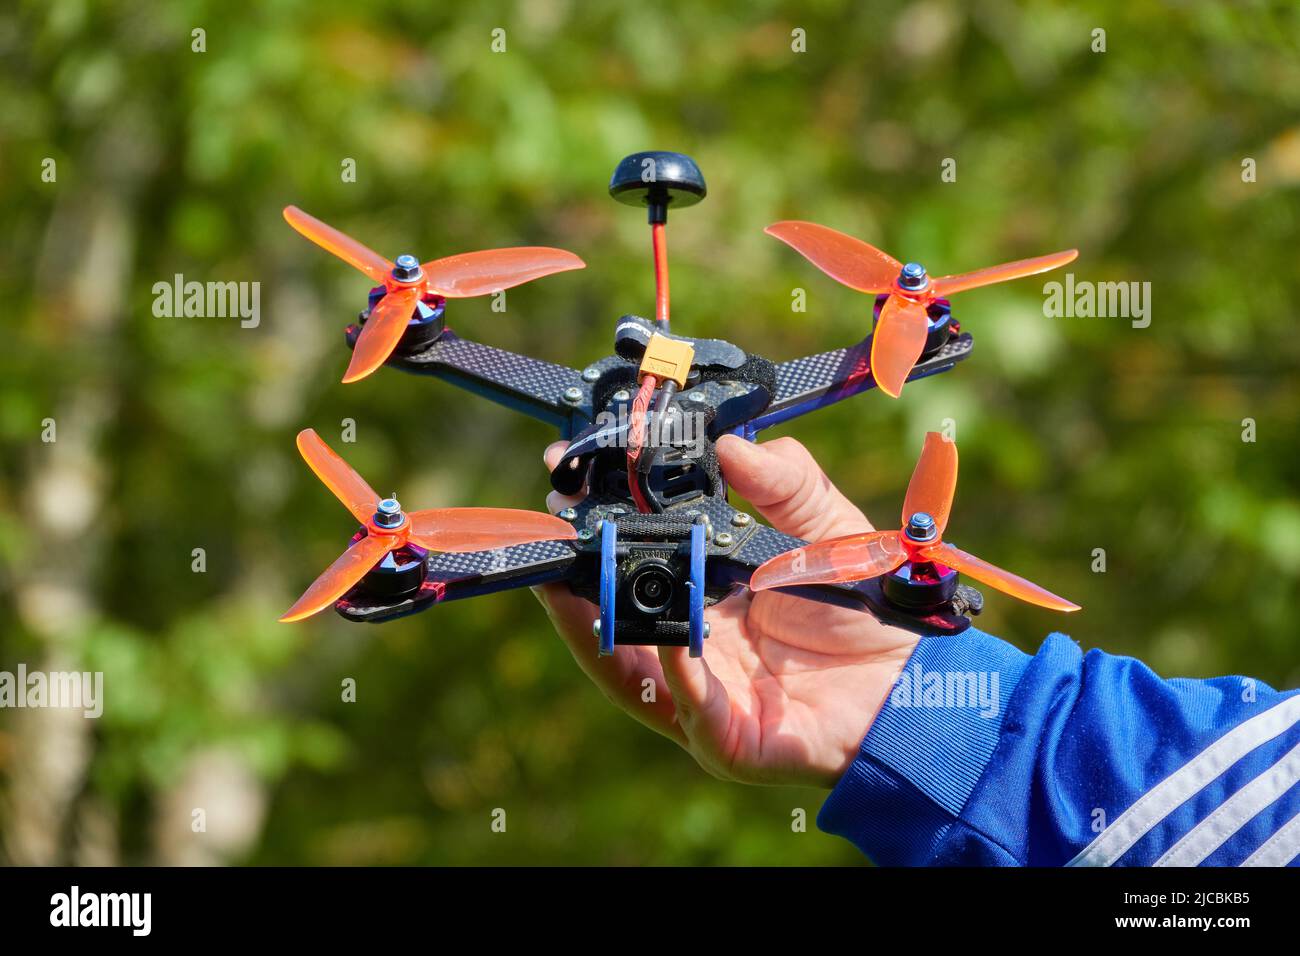 Nuertingen, Allemagne - 16 mai,2020: Le drone noir également la course quad, avec orange hélice, est tenu par des mains humaines. Herbe floue en arrière-plan. Allemagne Banque D'Images